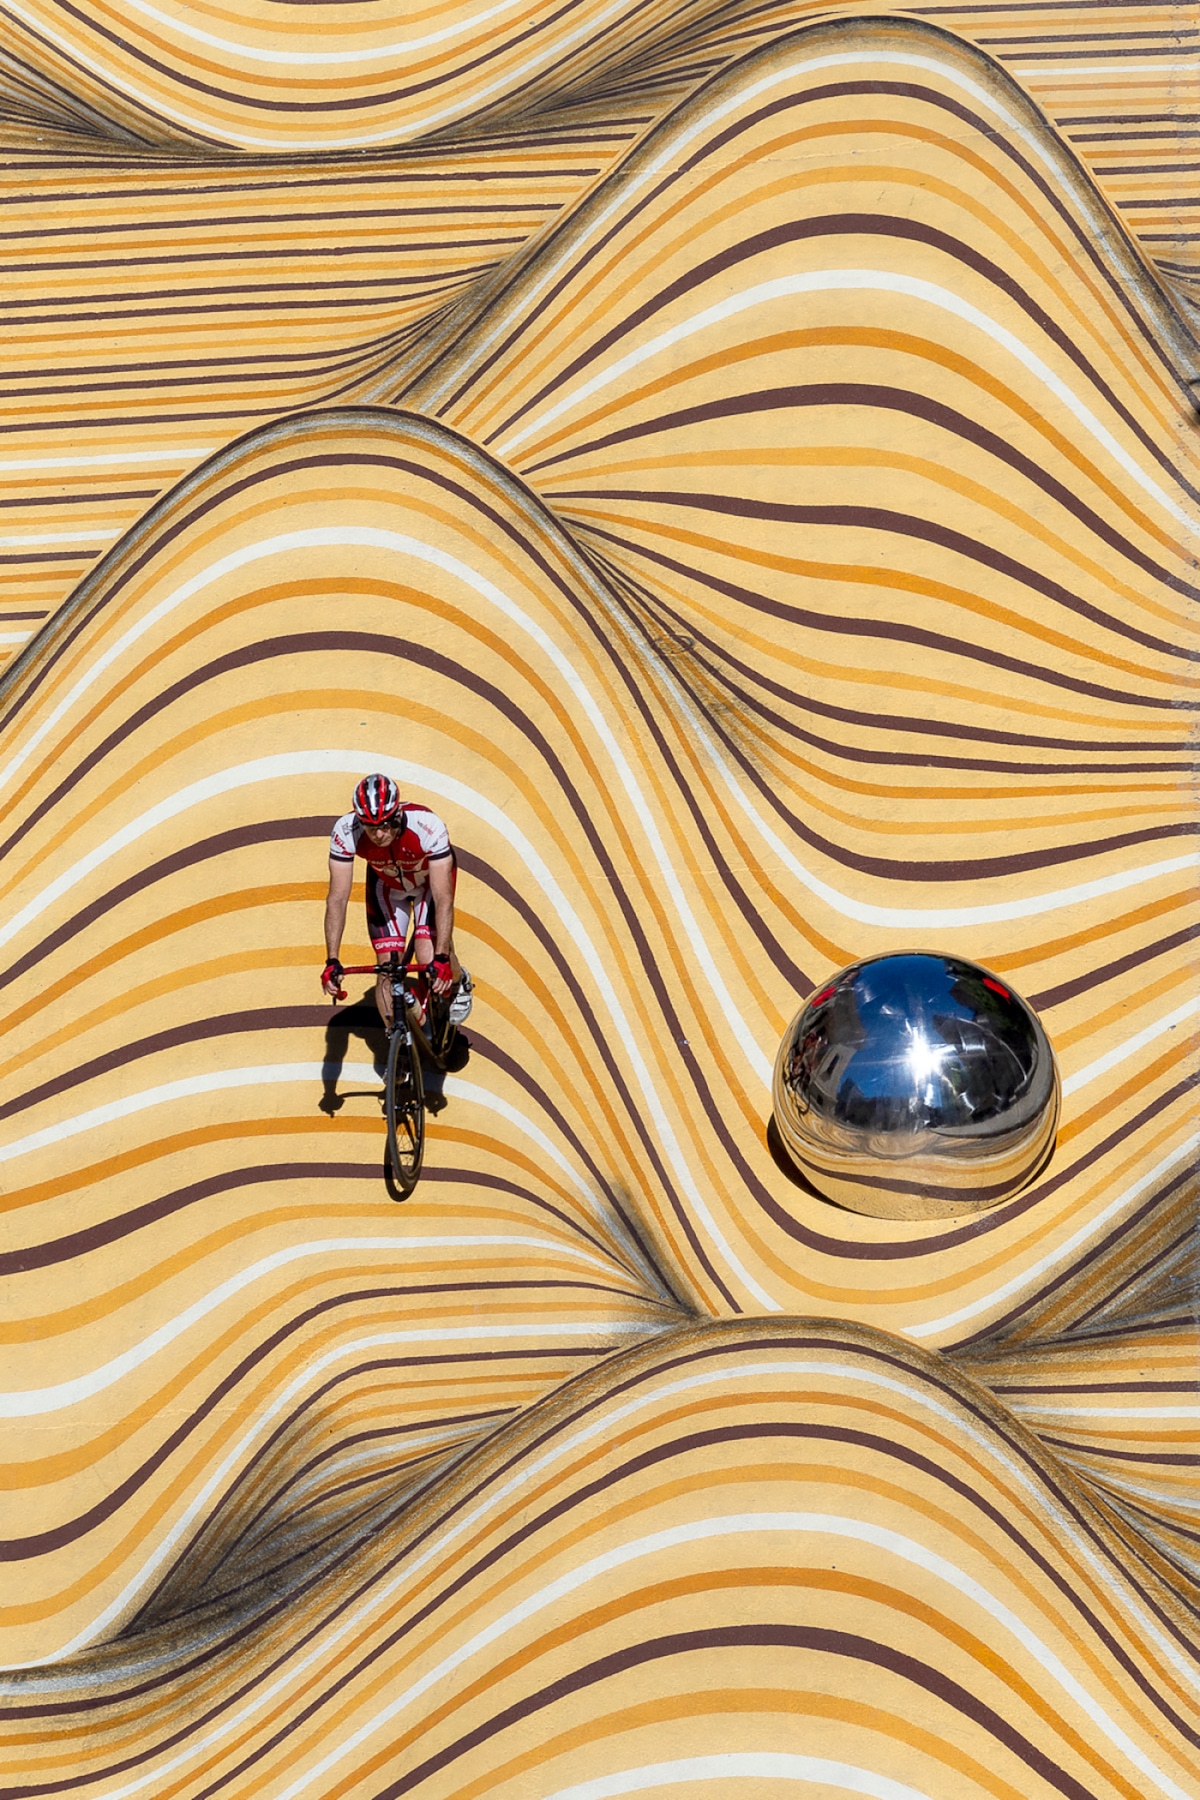 Їзда на велосипеді через анаморфоподібну фреску. Рухомі дюни